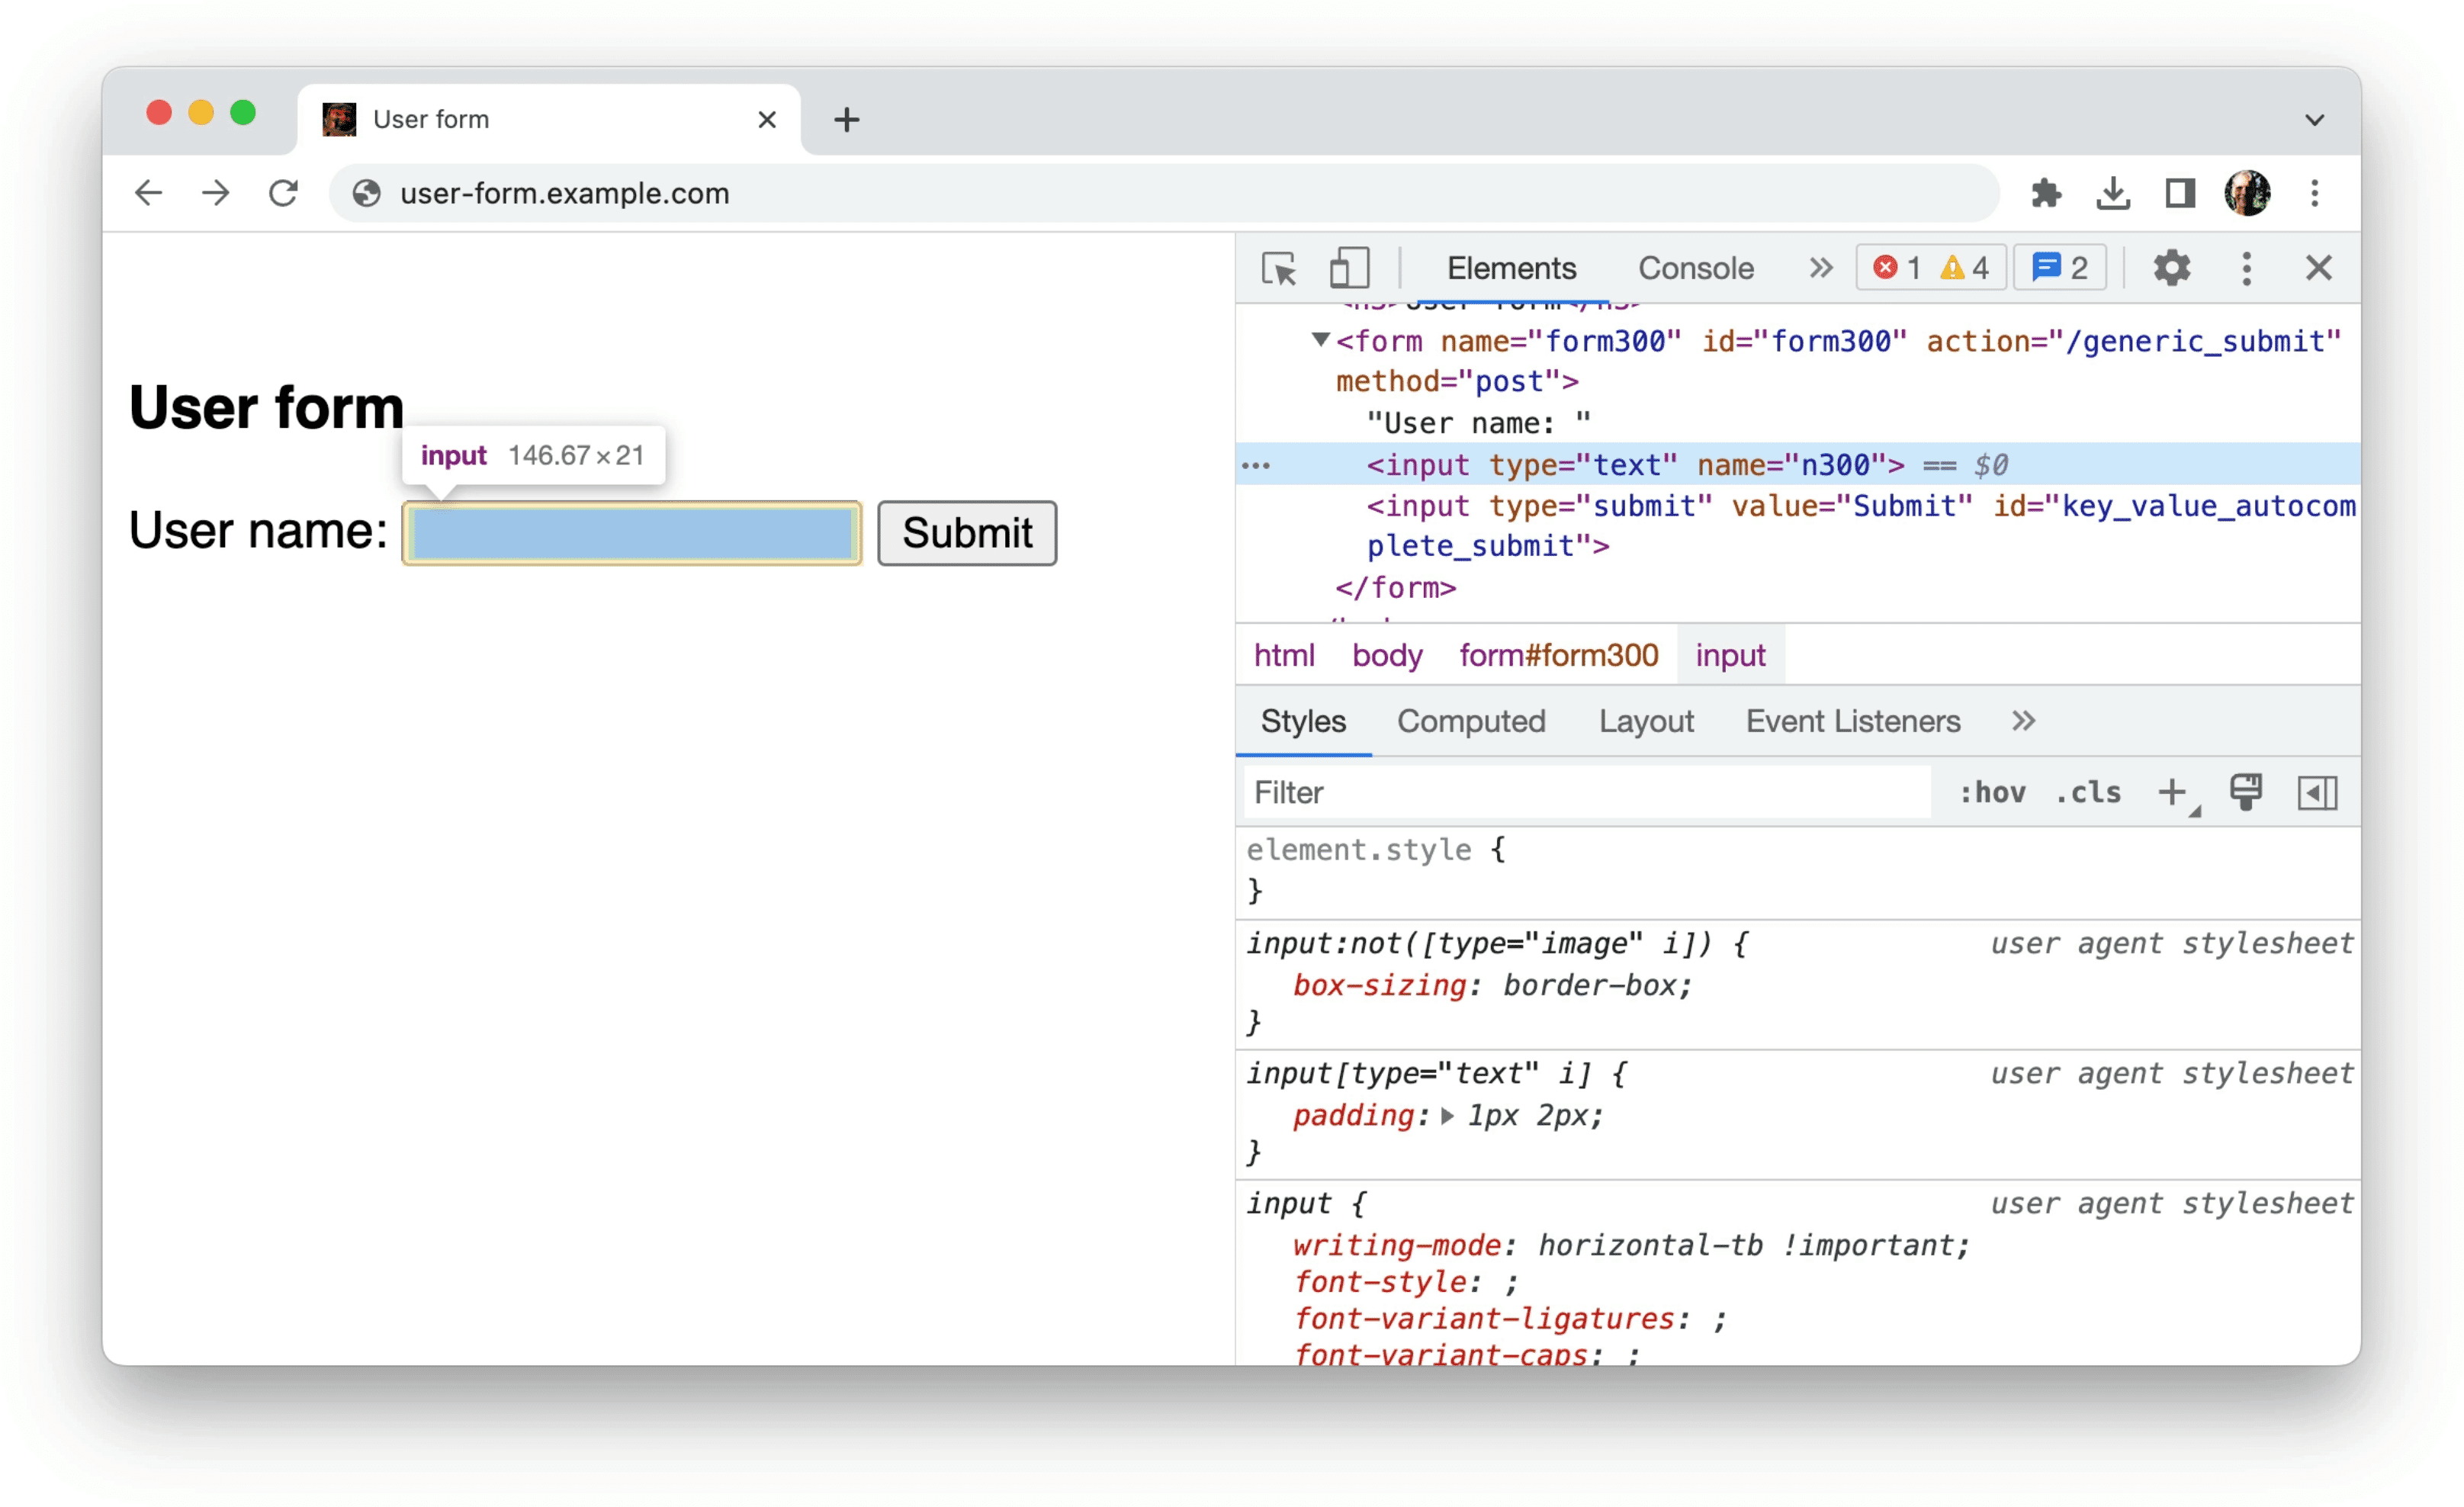 Chrome DevTools
menampilkan informasi tentang data tidak terstruktur dalam bentuk, seperti yang ditunjukkan pada contoh sebelumnya: satu input yang hanya memiliki atribut type=text dan name=n300.